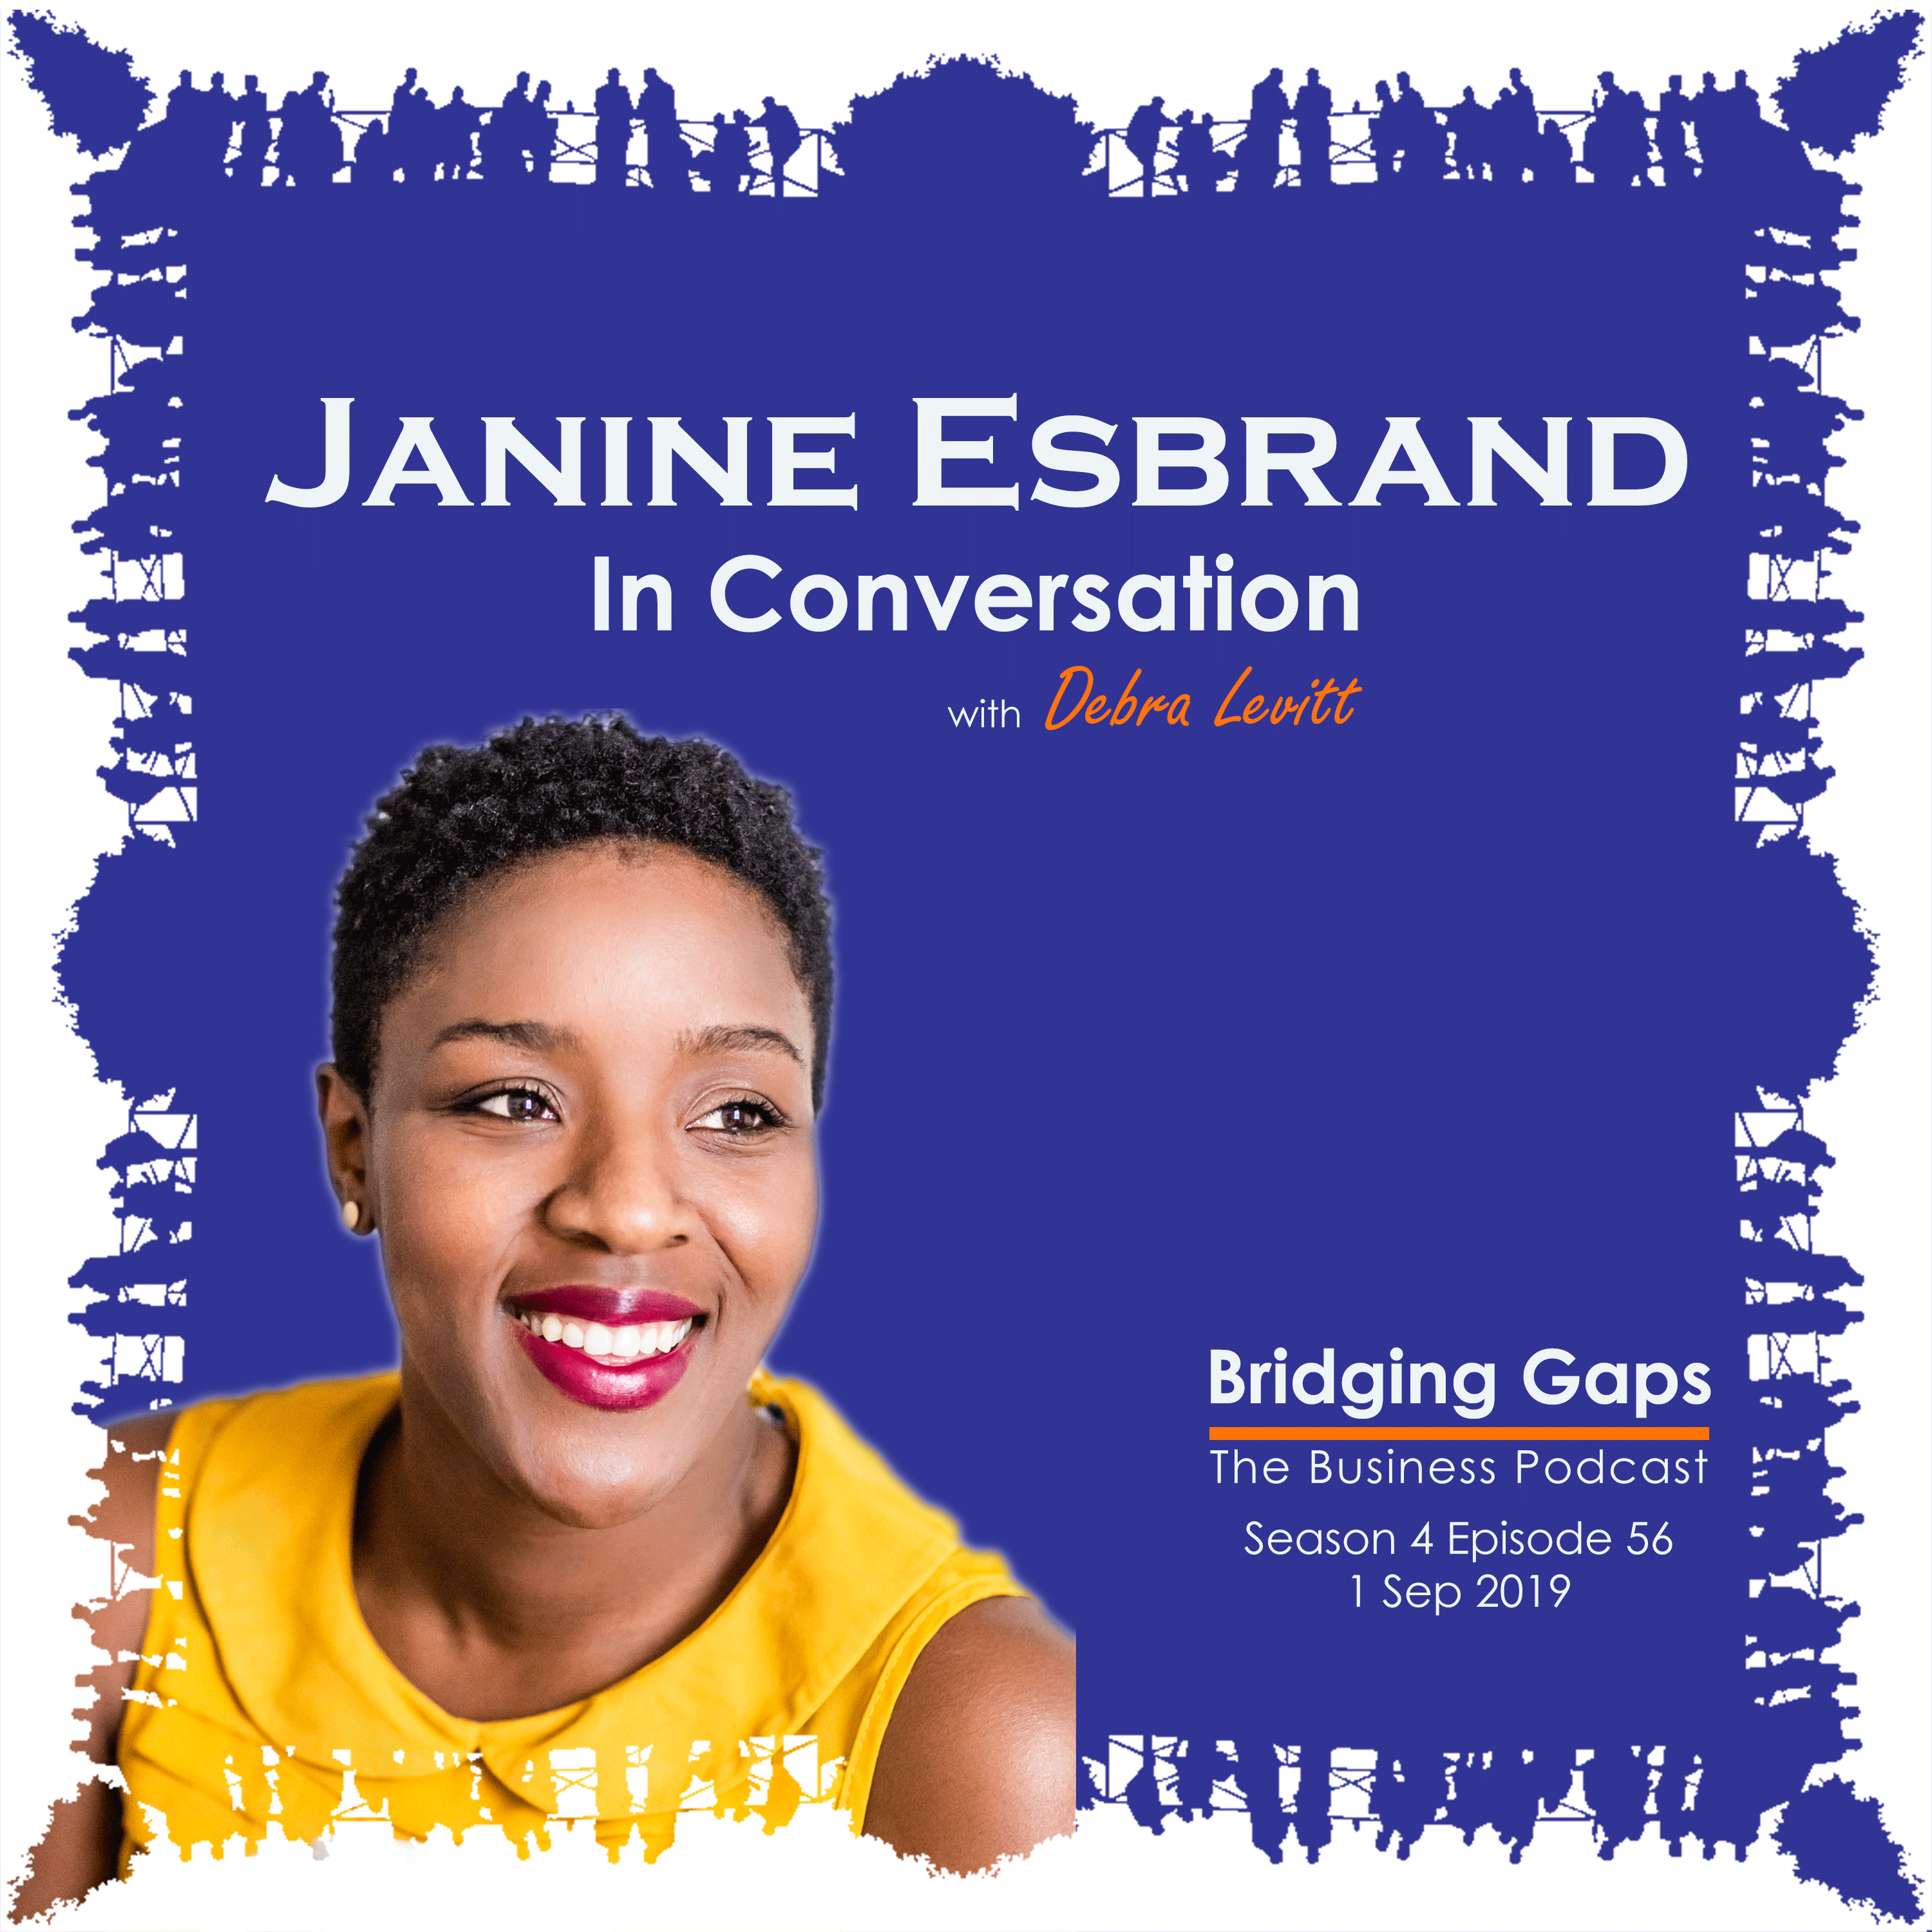 Janine Esbrand: In Conversation